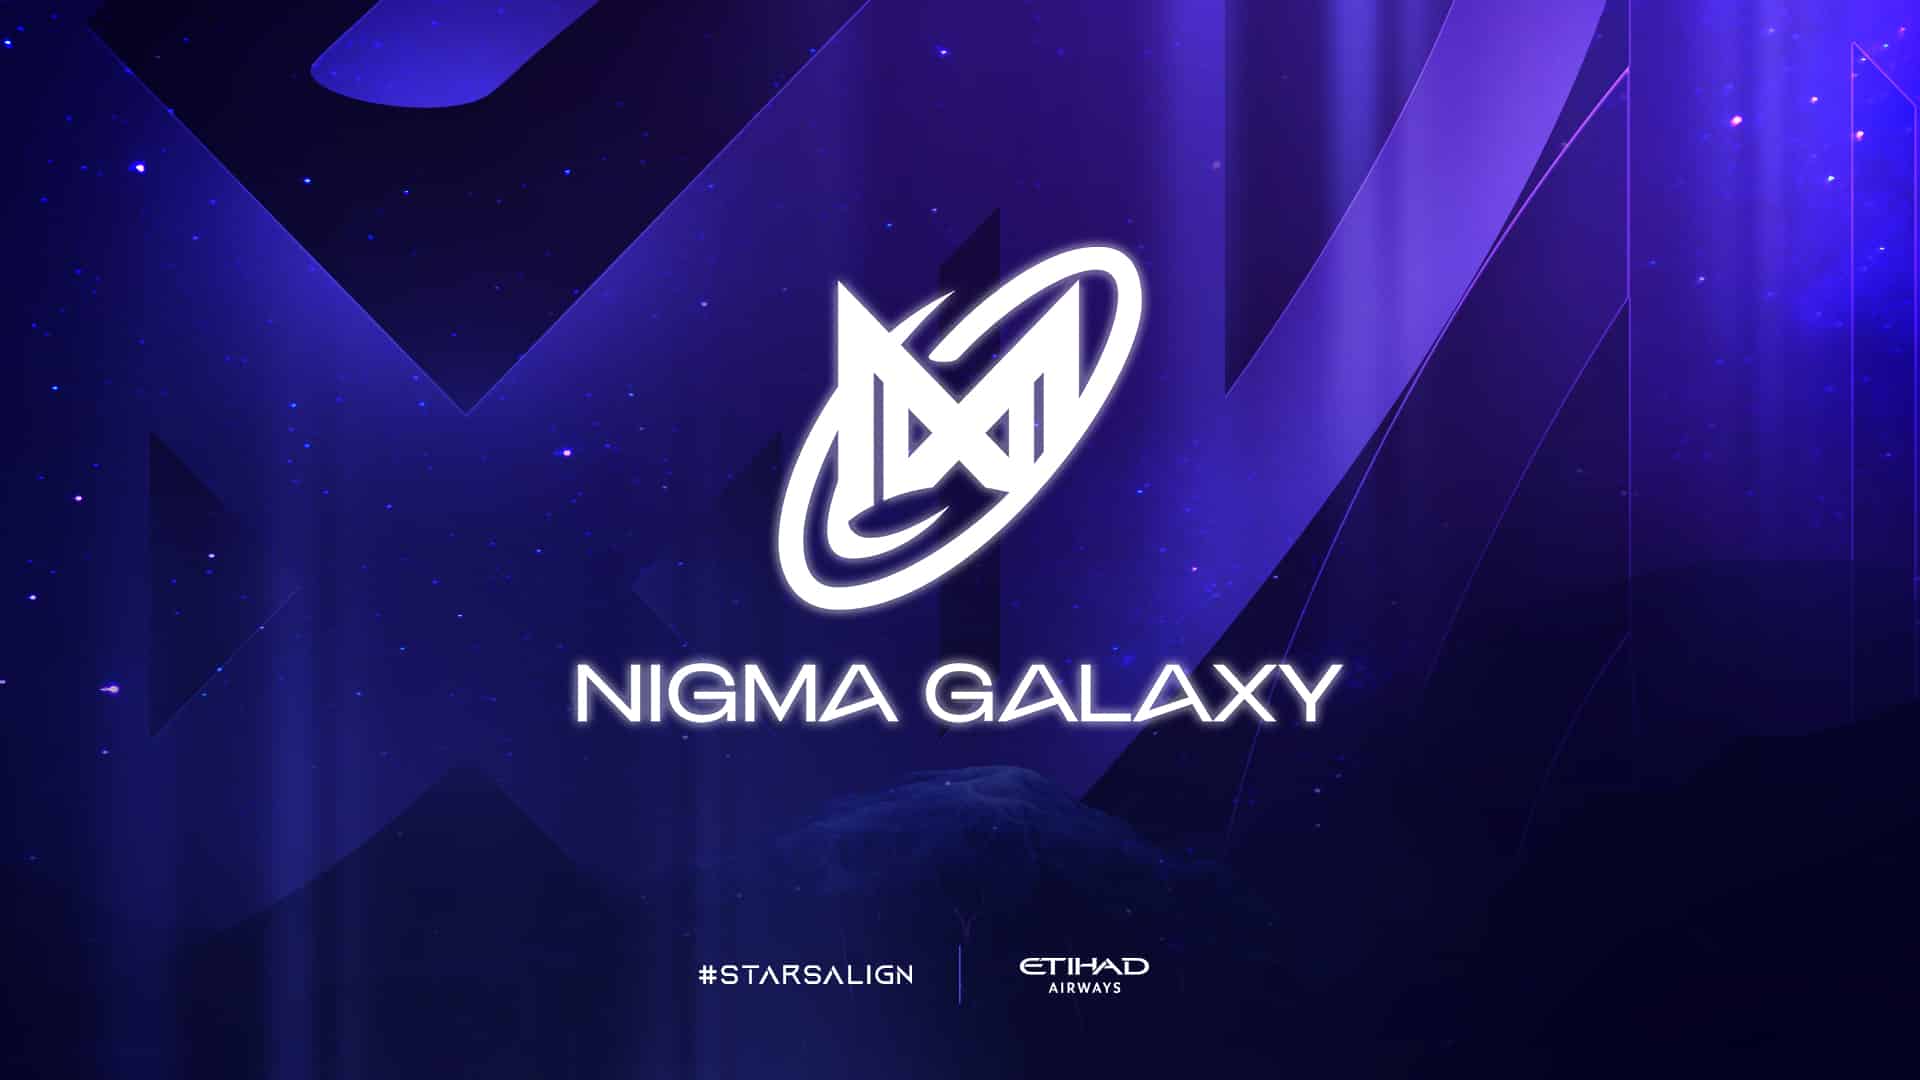 Nigma-Galaxie